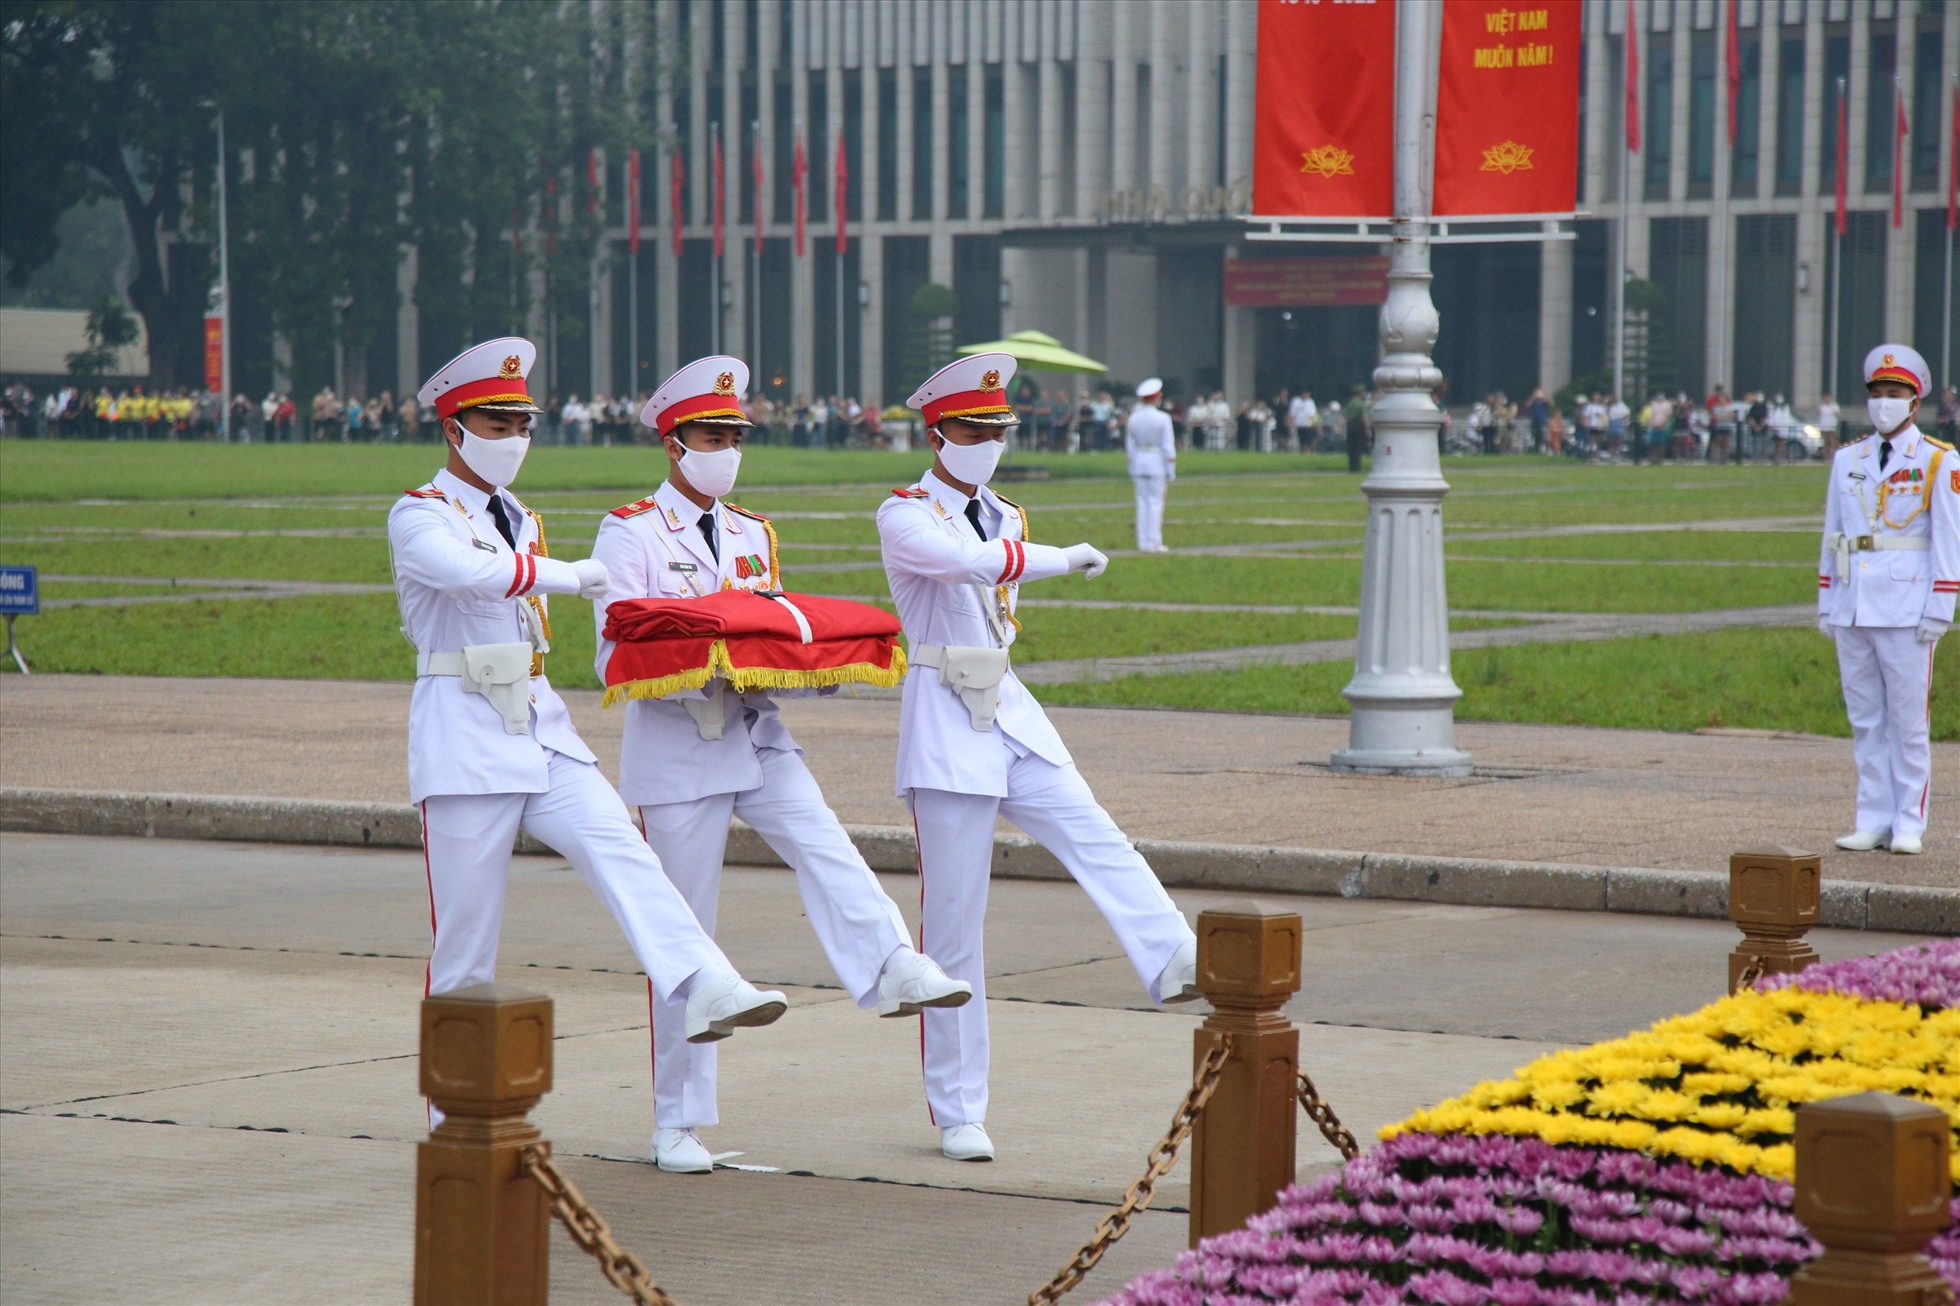 Ba chiến sỹ mang khay đựng Quốc kỳ tách khỏi đội hình tiến về cột cờ chuẩn bị các nghi thức trang trọng.